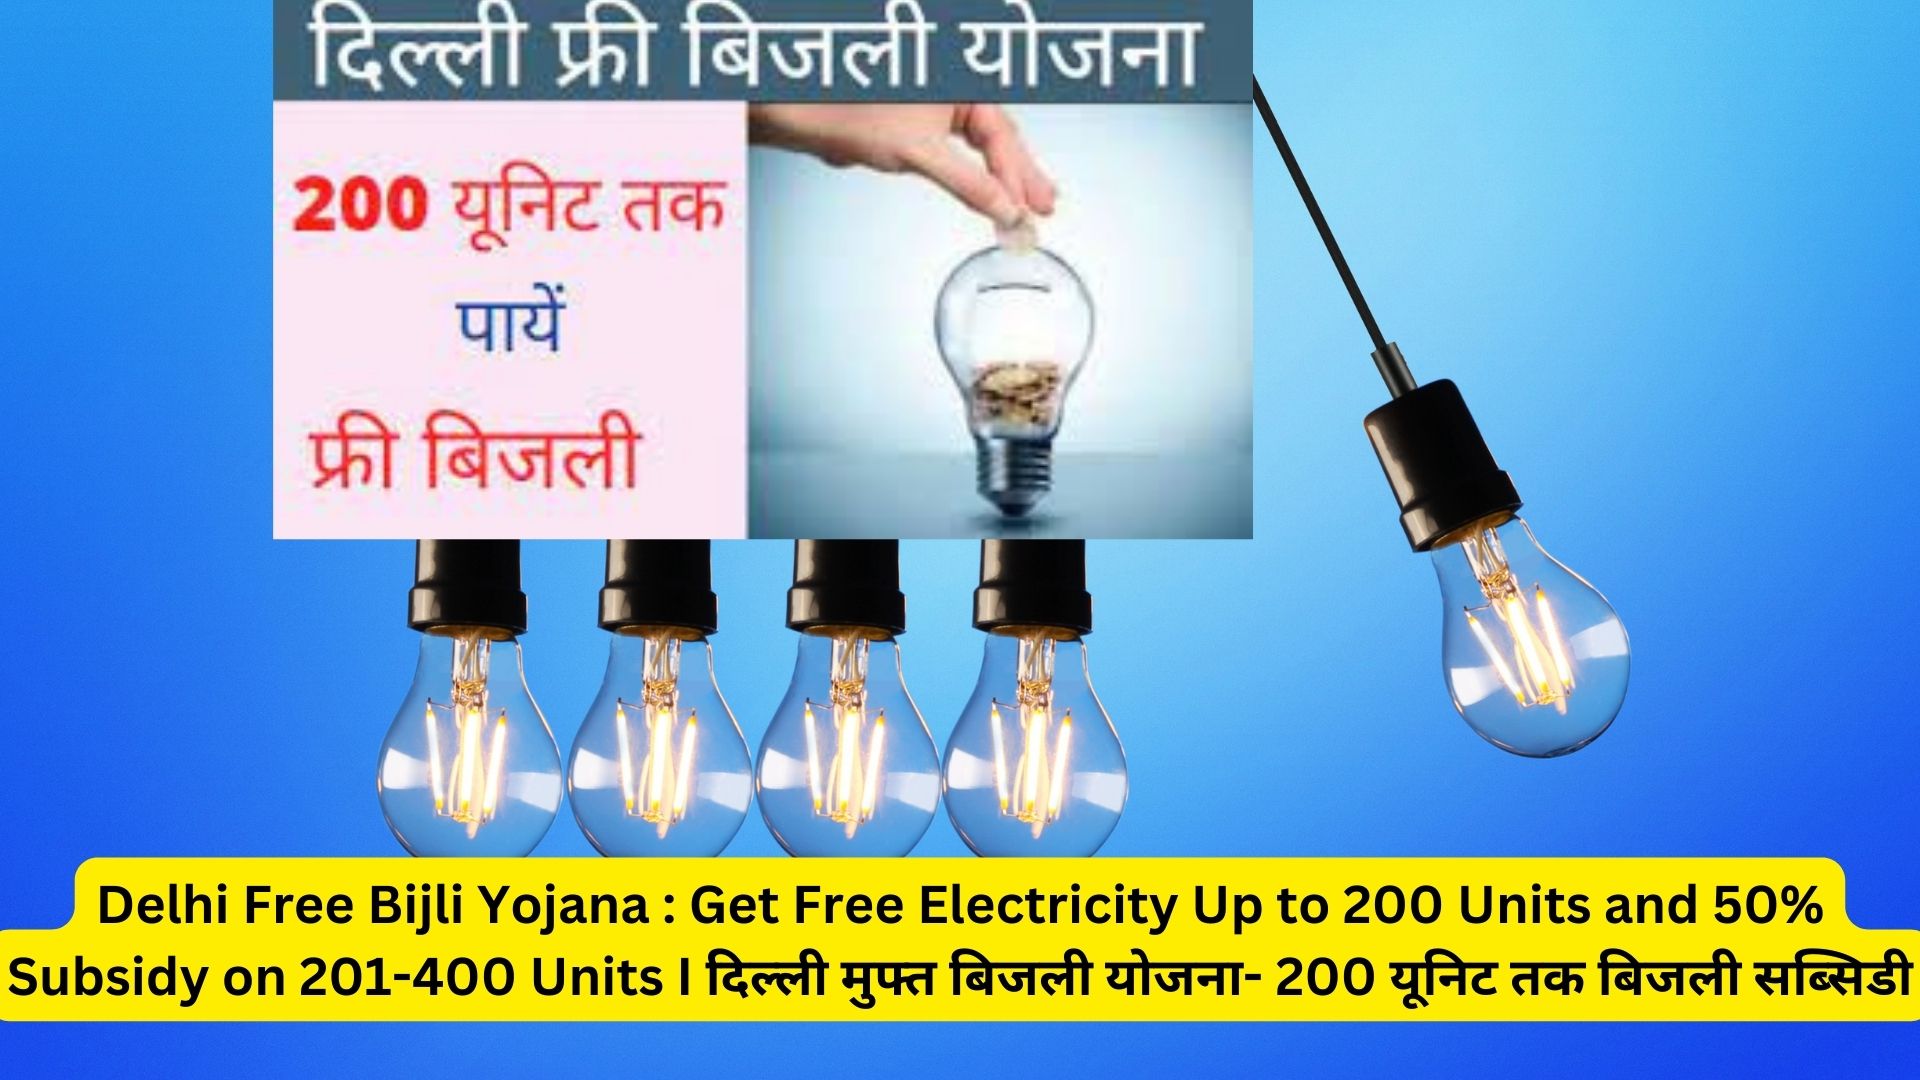 Delhi Free Bijli Yojana : Get Free Electricity Up to 200 Units and 50% Subsidy on 201-400 Units I दिल्ली मुफ्त बिजली योजना- 200 यूनिट तक बिजली सब्सिडी